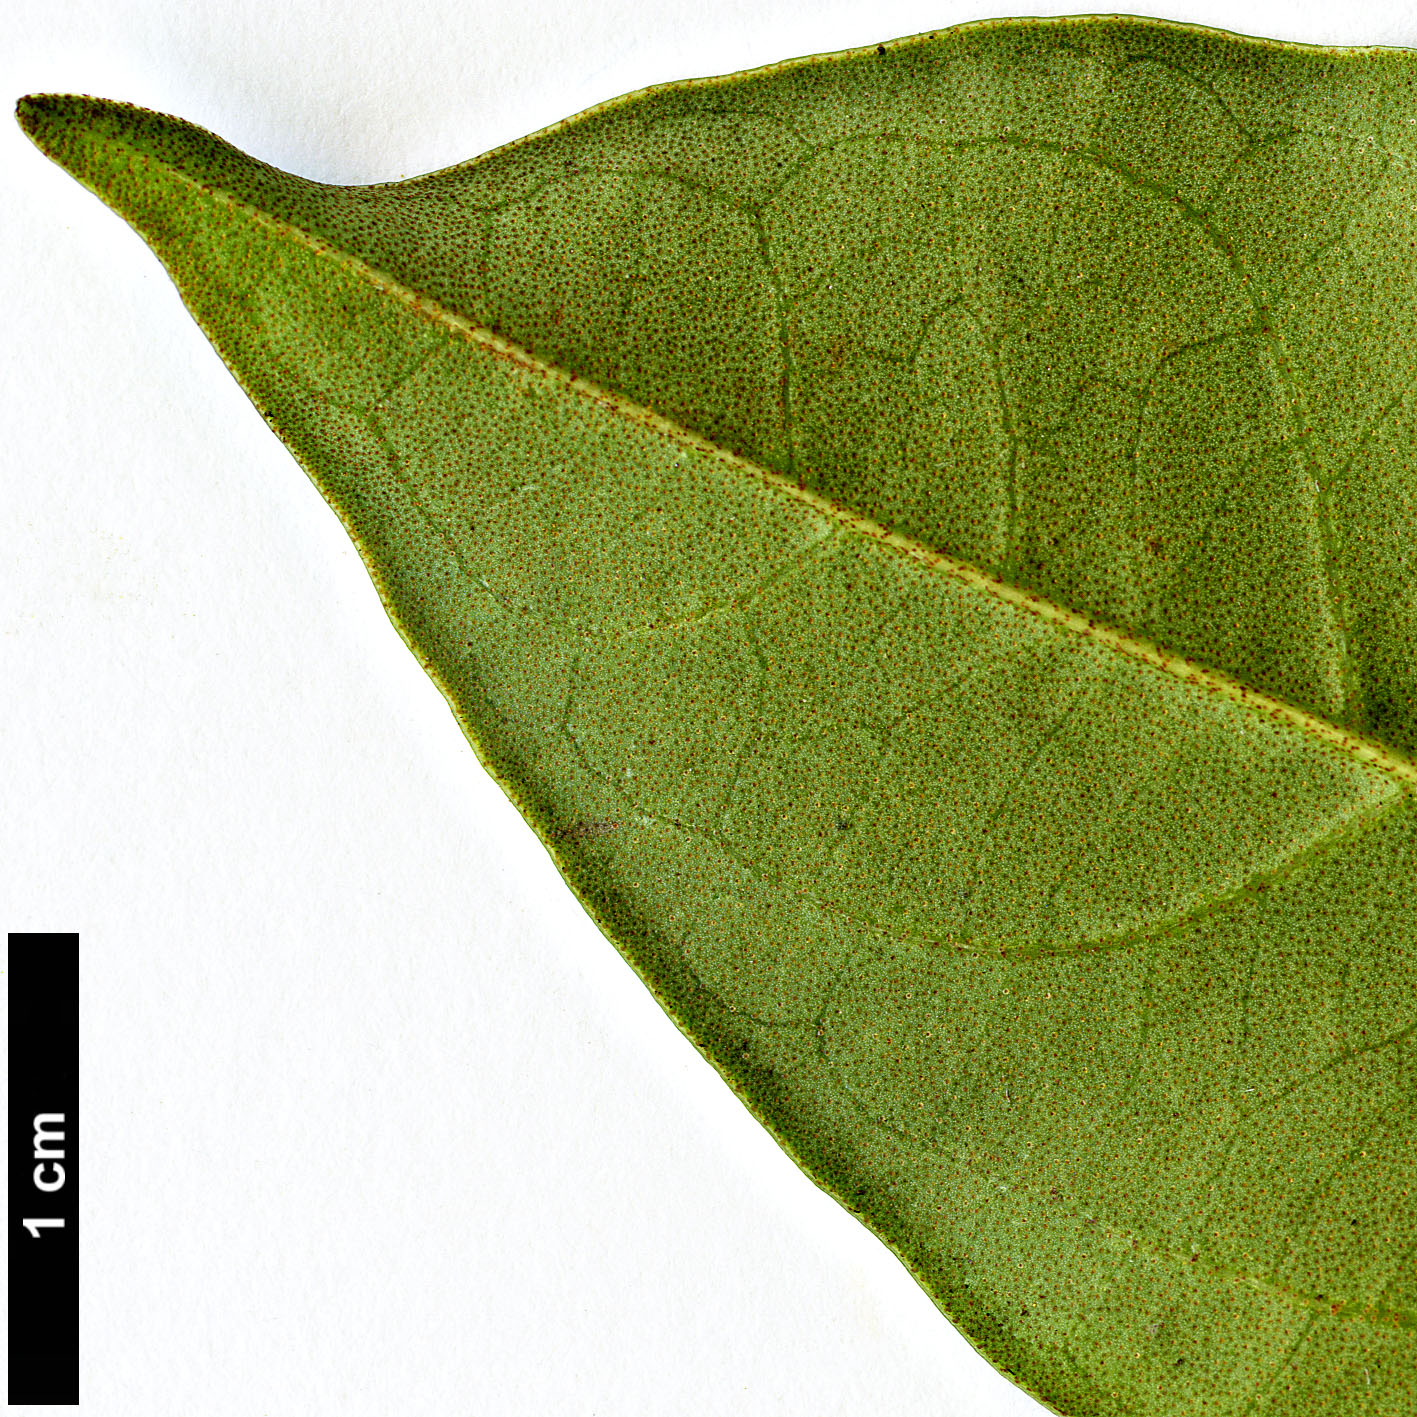 High resolution image: Family: Adoxaceae - Genus: Viburnum - Taxon: punctatum